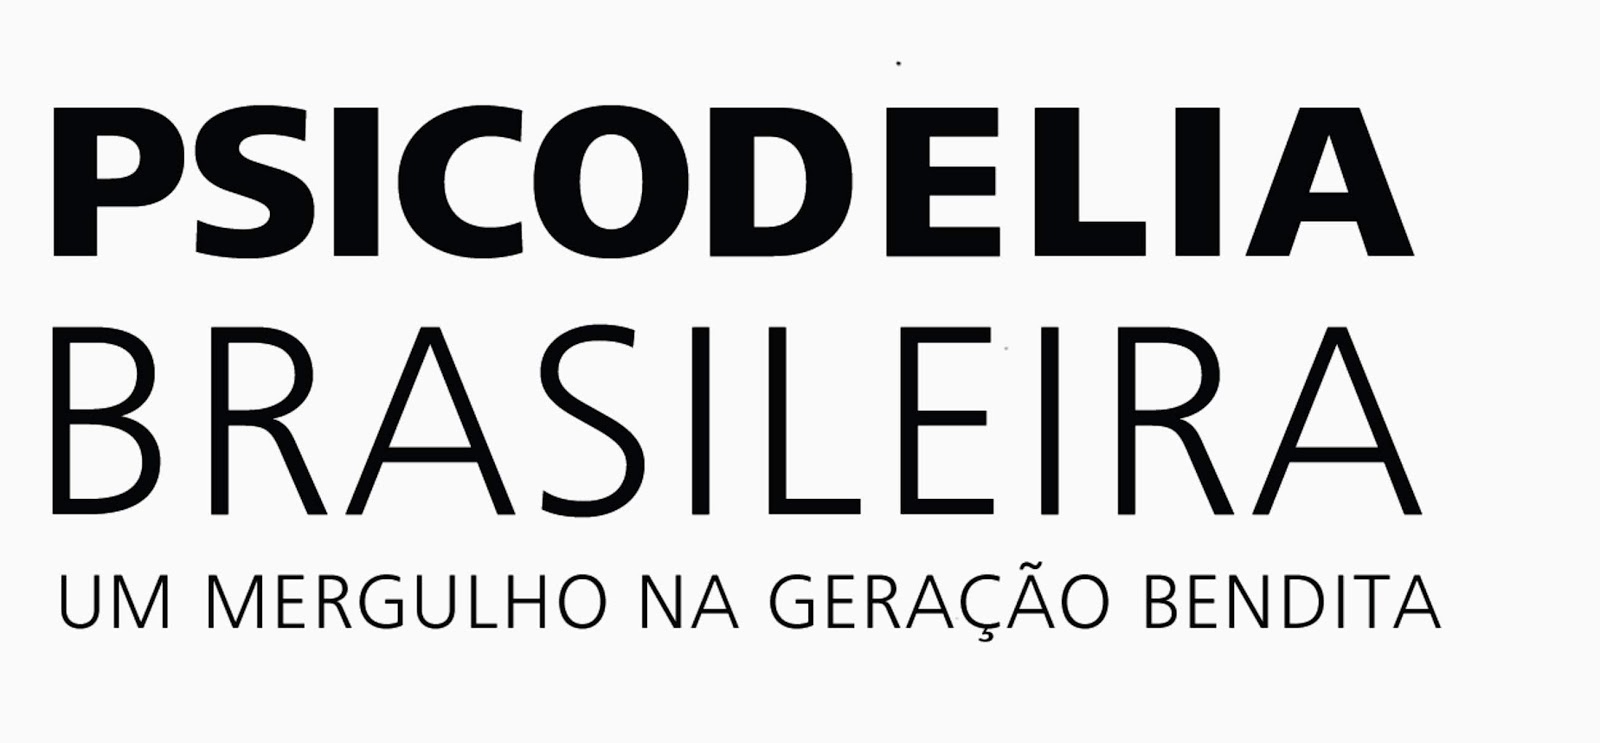 No Facebook: Batalha de gírias paulistas e cariocas